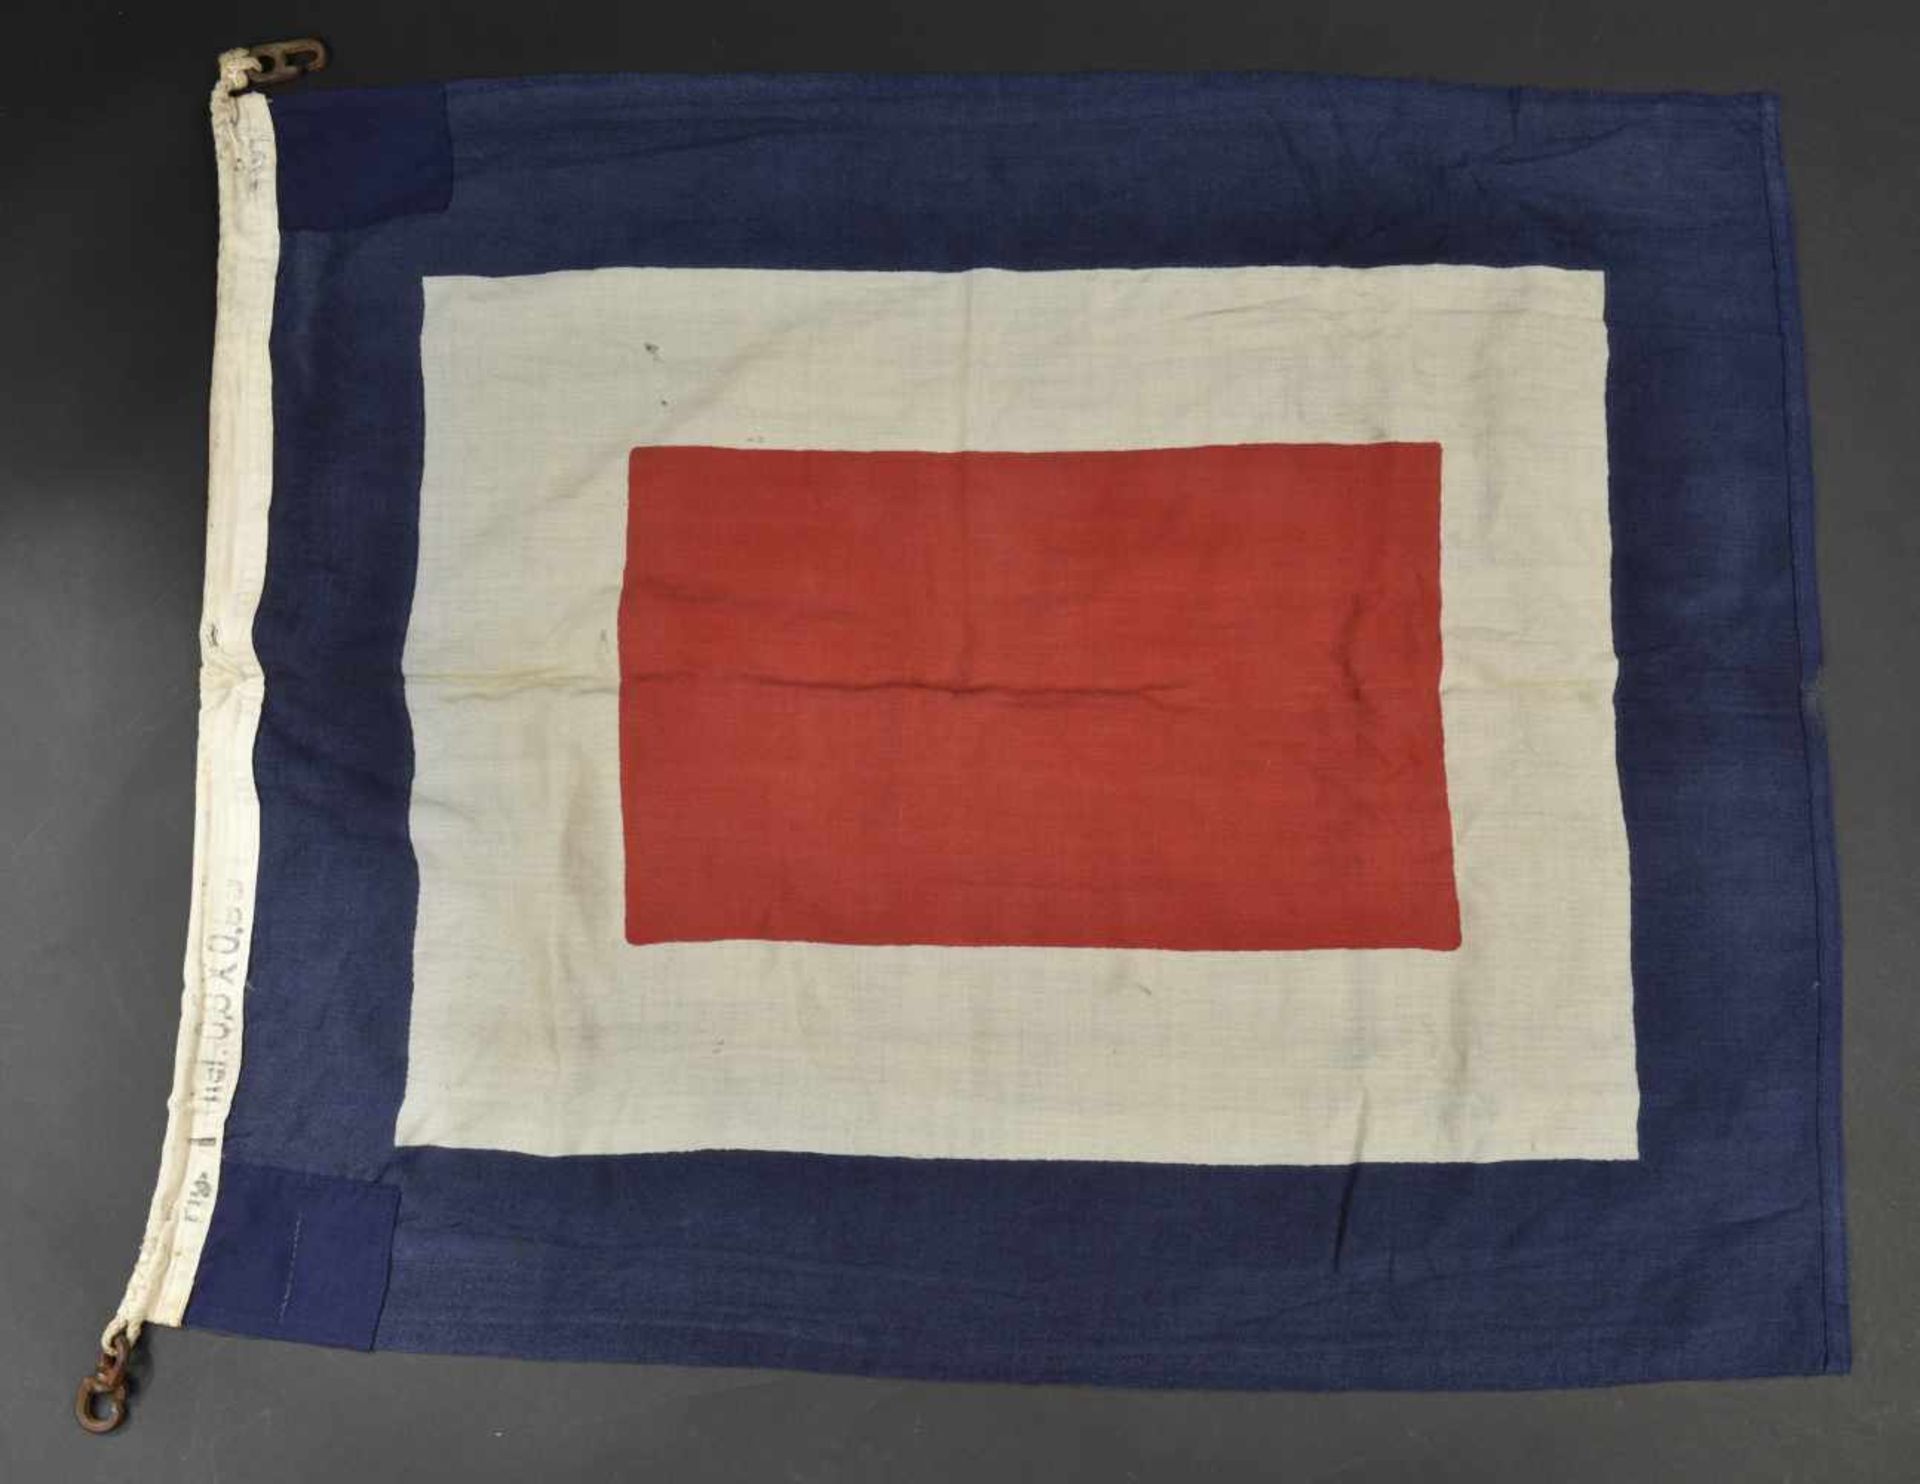 Drapeau de signalisation de la Kriegsmarine En tissu coton bleu/blanc/rouge. Les cordons de fixation